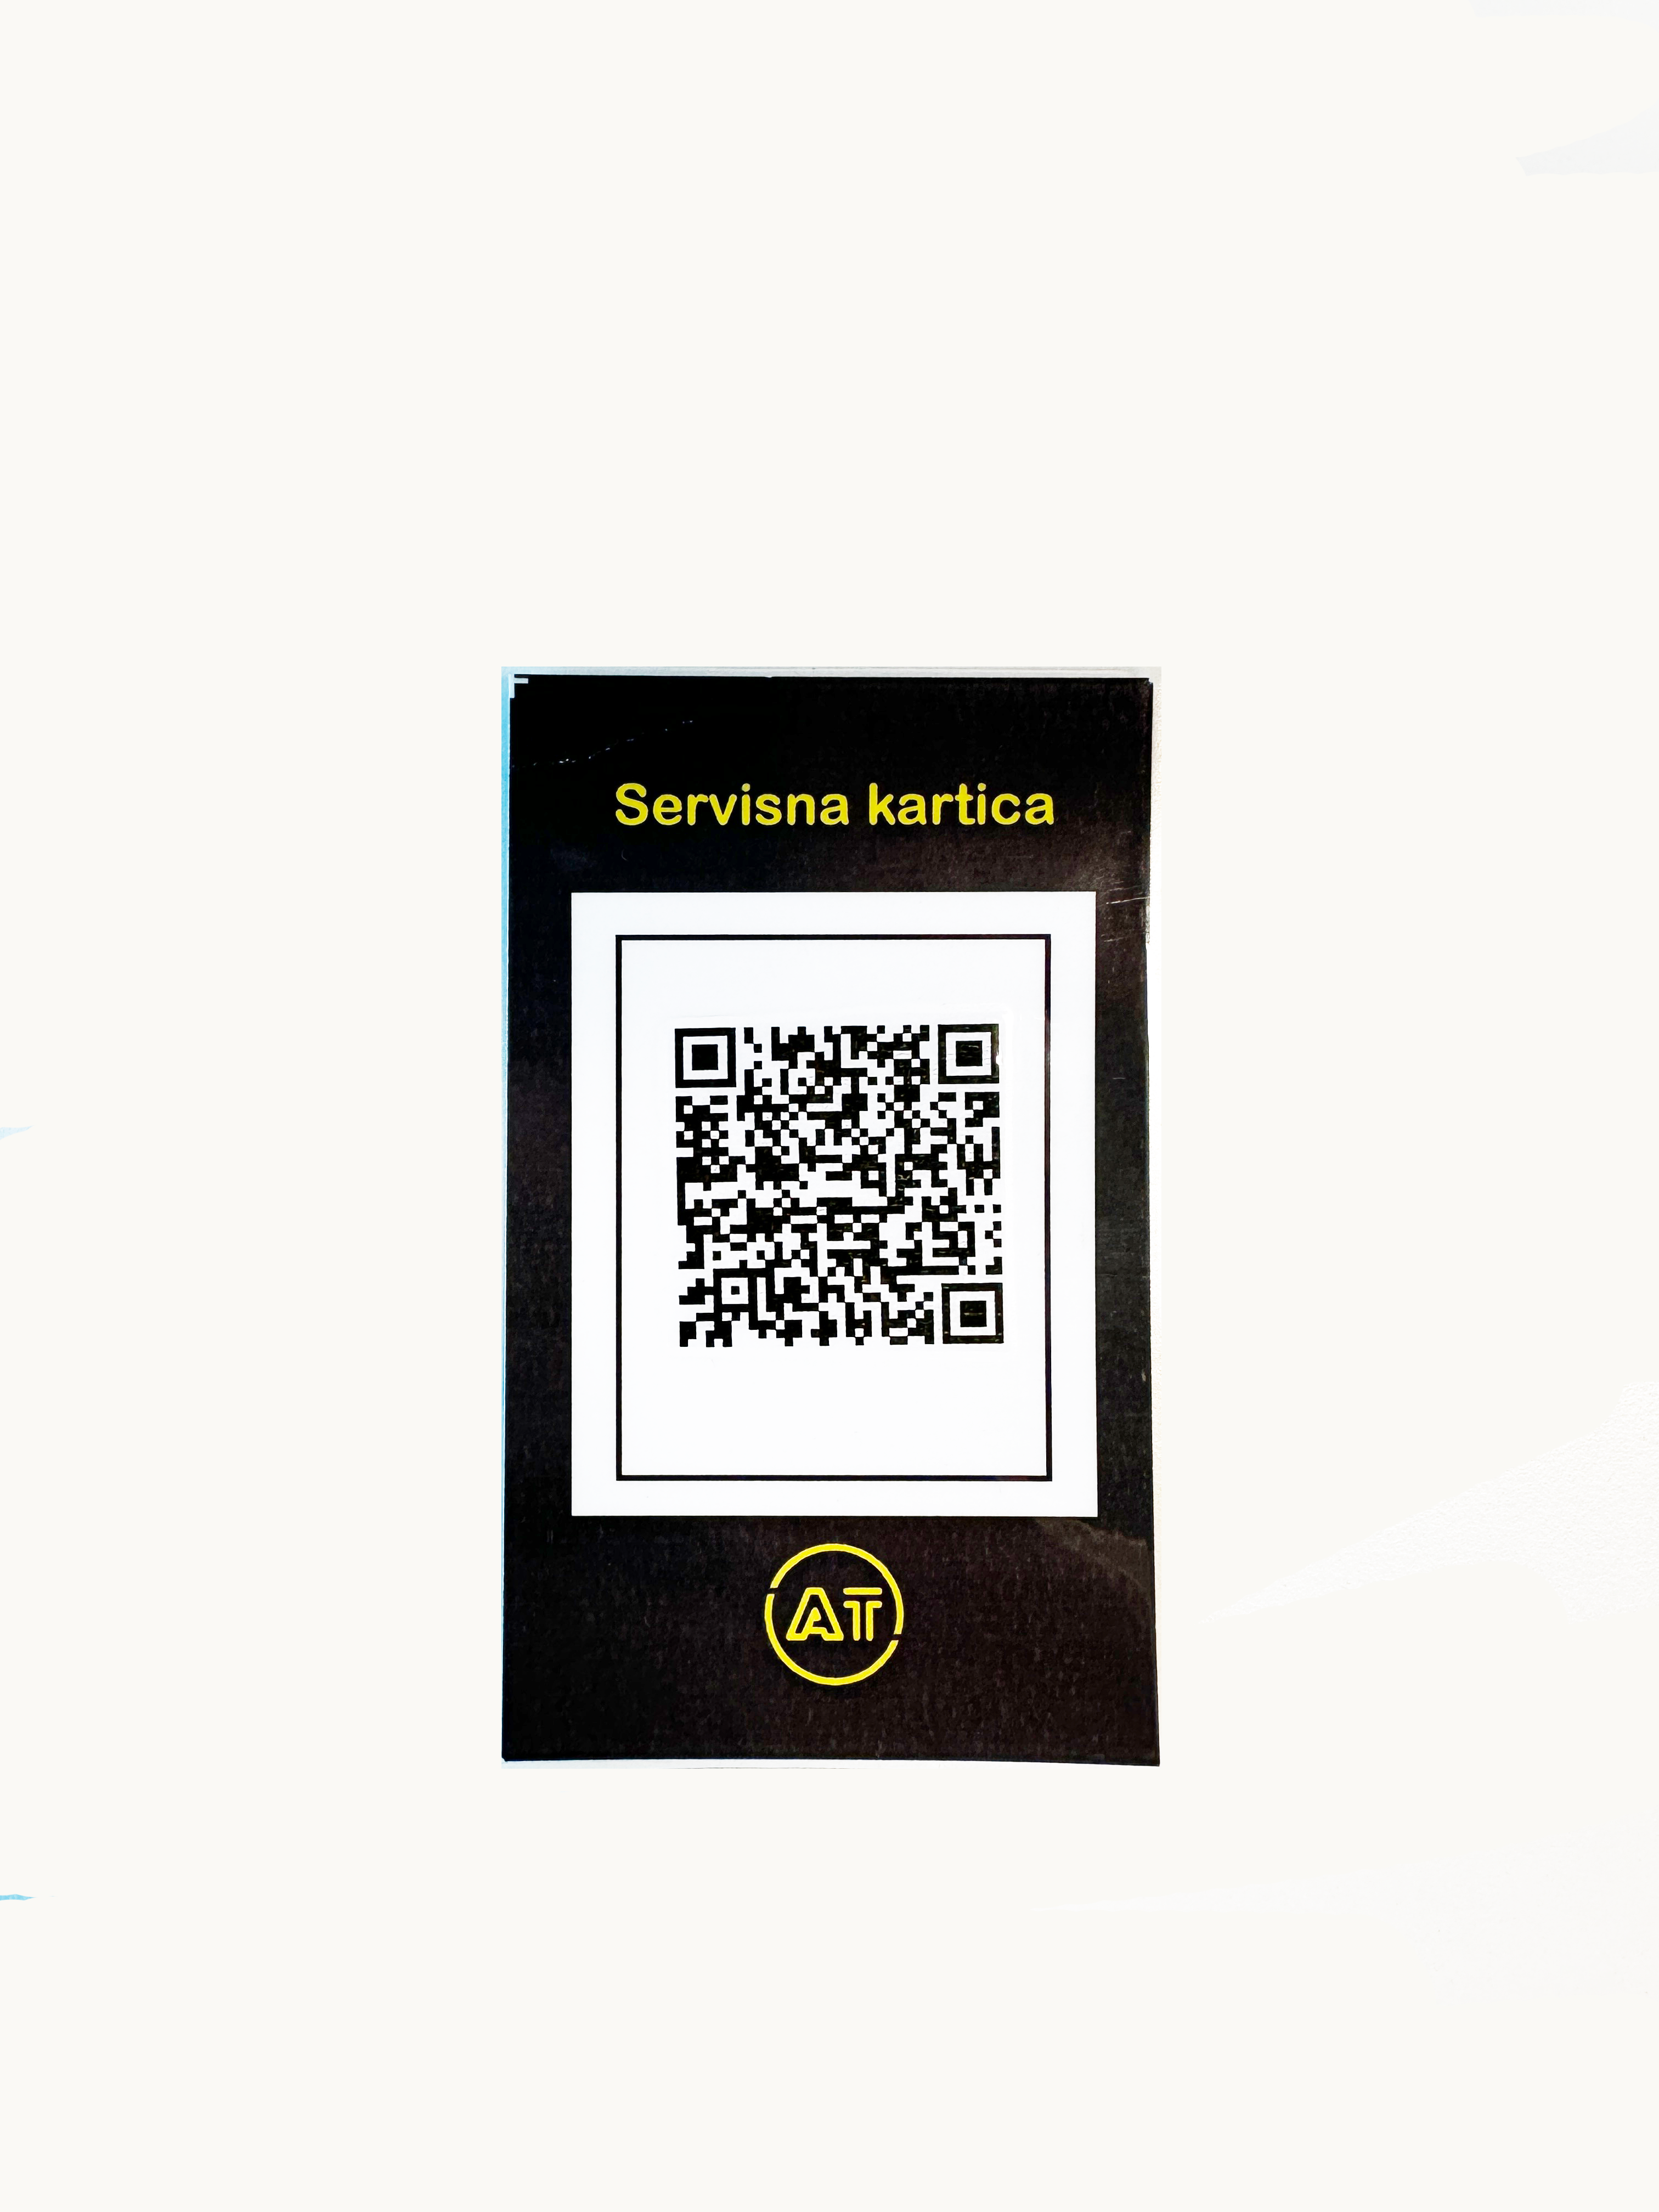 Servisne digitalne kartice - nova usluga